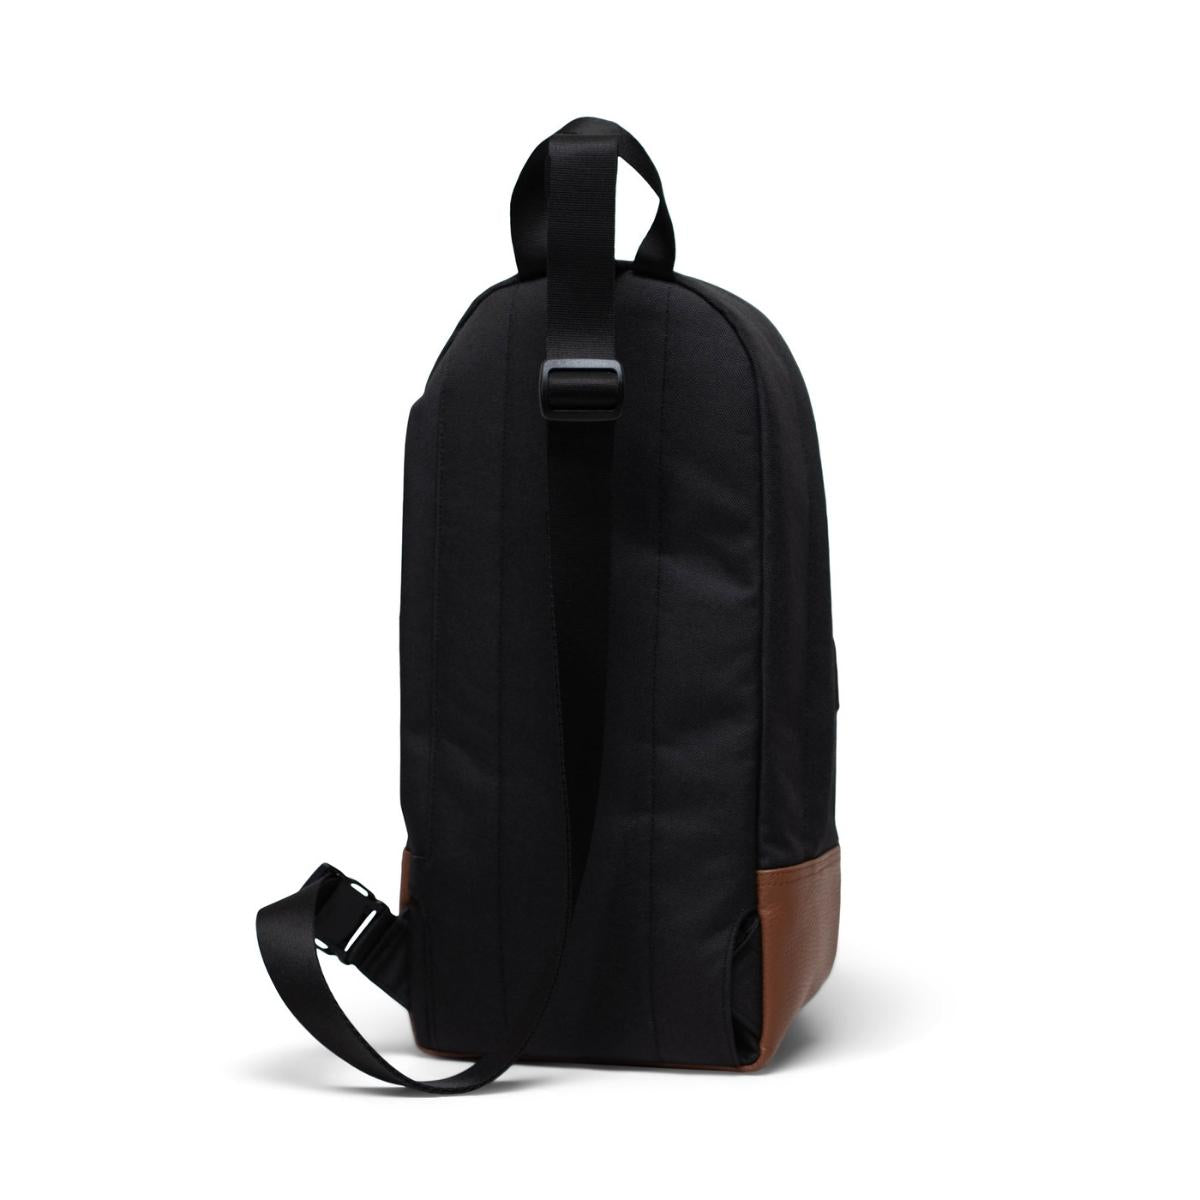 Herschel Heritage Shoulder Bag in Black/Tan